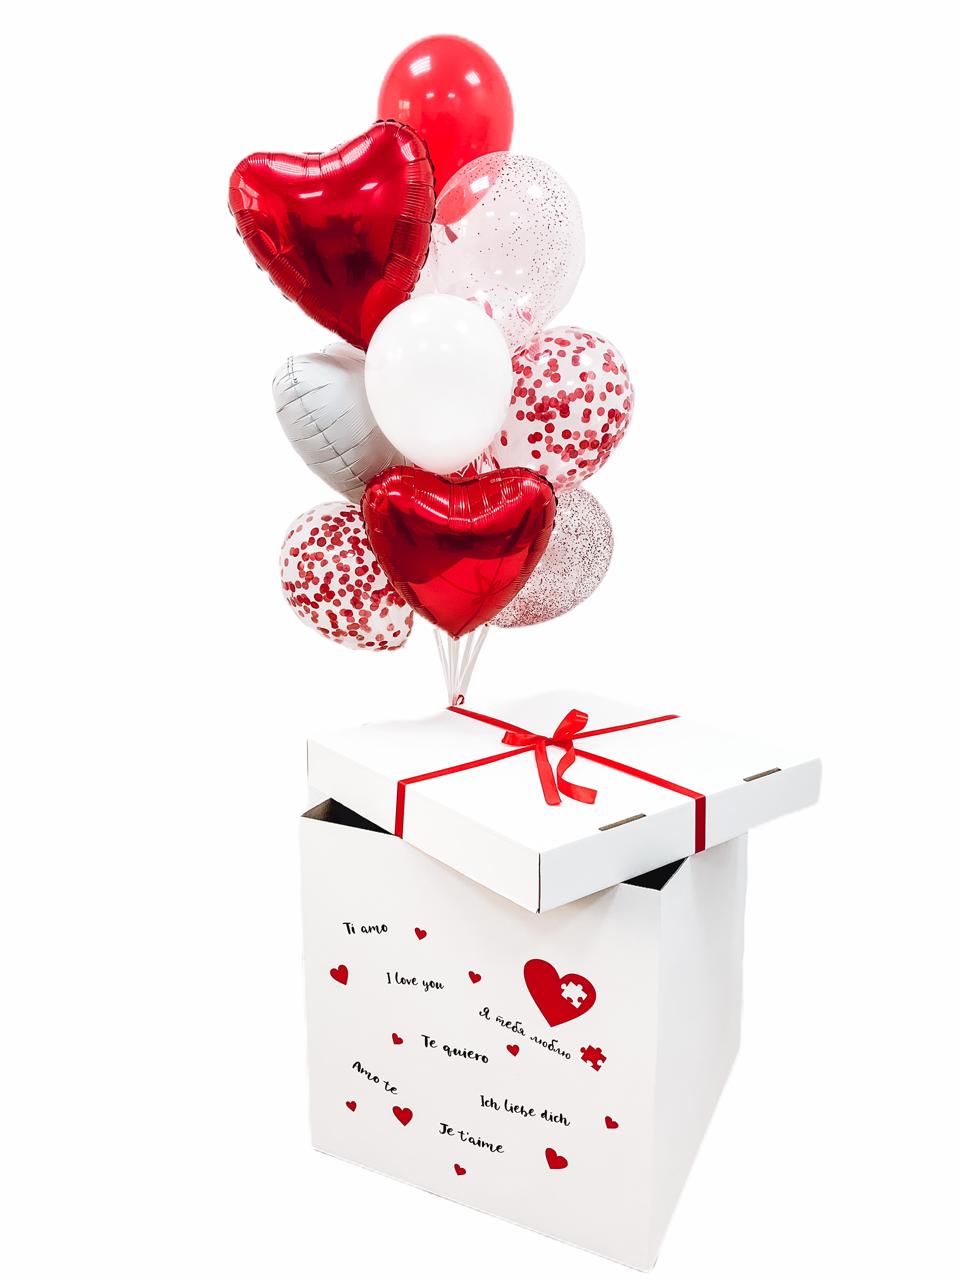 - Декорированная коробка
-  2 Однотонных шара
- 4 Фольгированных сердца 45см
- 4 Шара с конфетти
- Утяжелитель